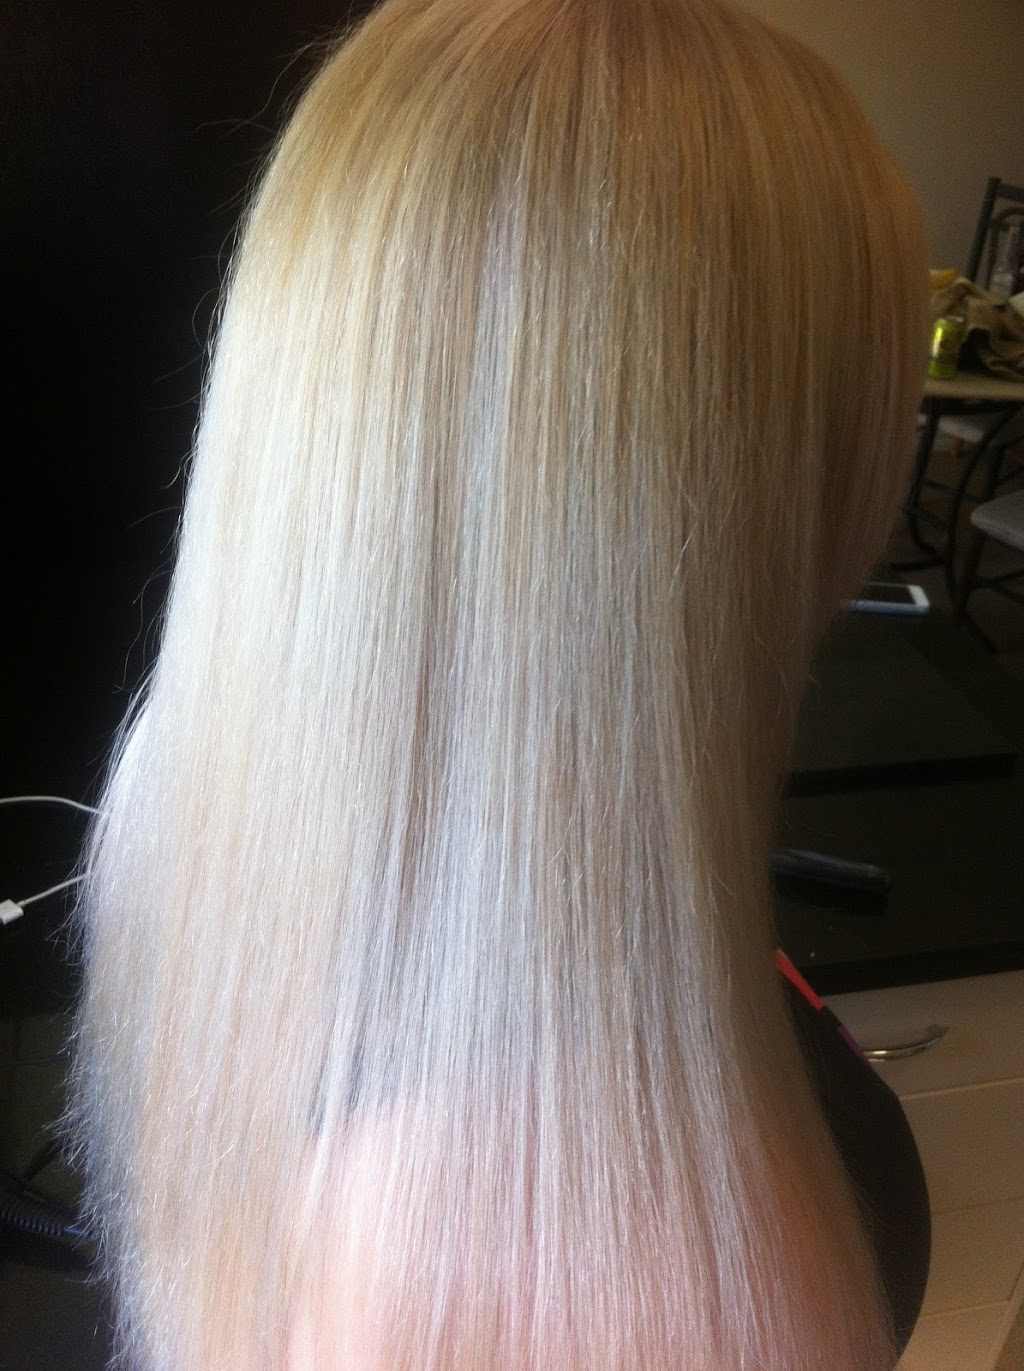 Danielles Hair Design | hair care | 1 Trevino Pl, Wacol QLD 4076, Australia | 0478143135 OR +61 478 143 135